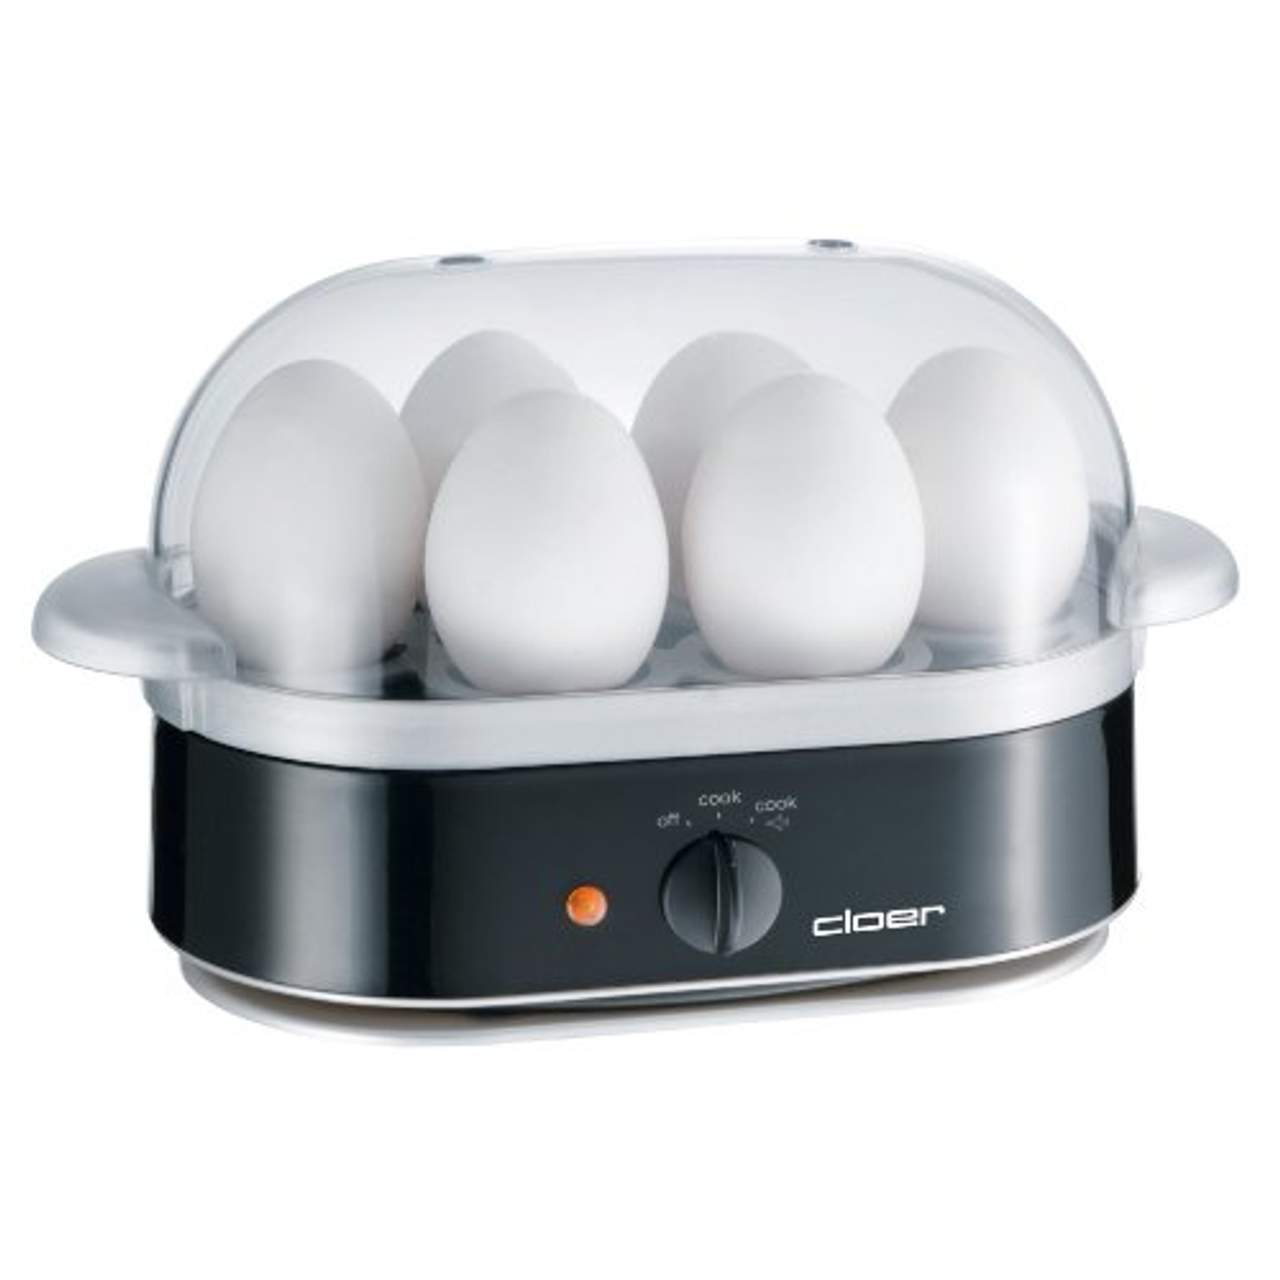 Cloer 6090 Eierkocher mit akustischer Fertigmeldung